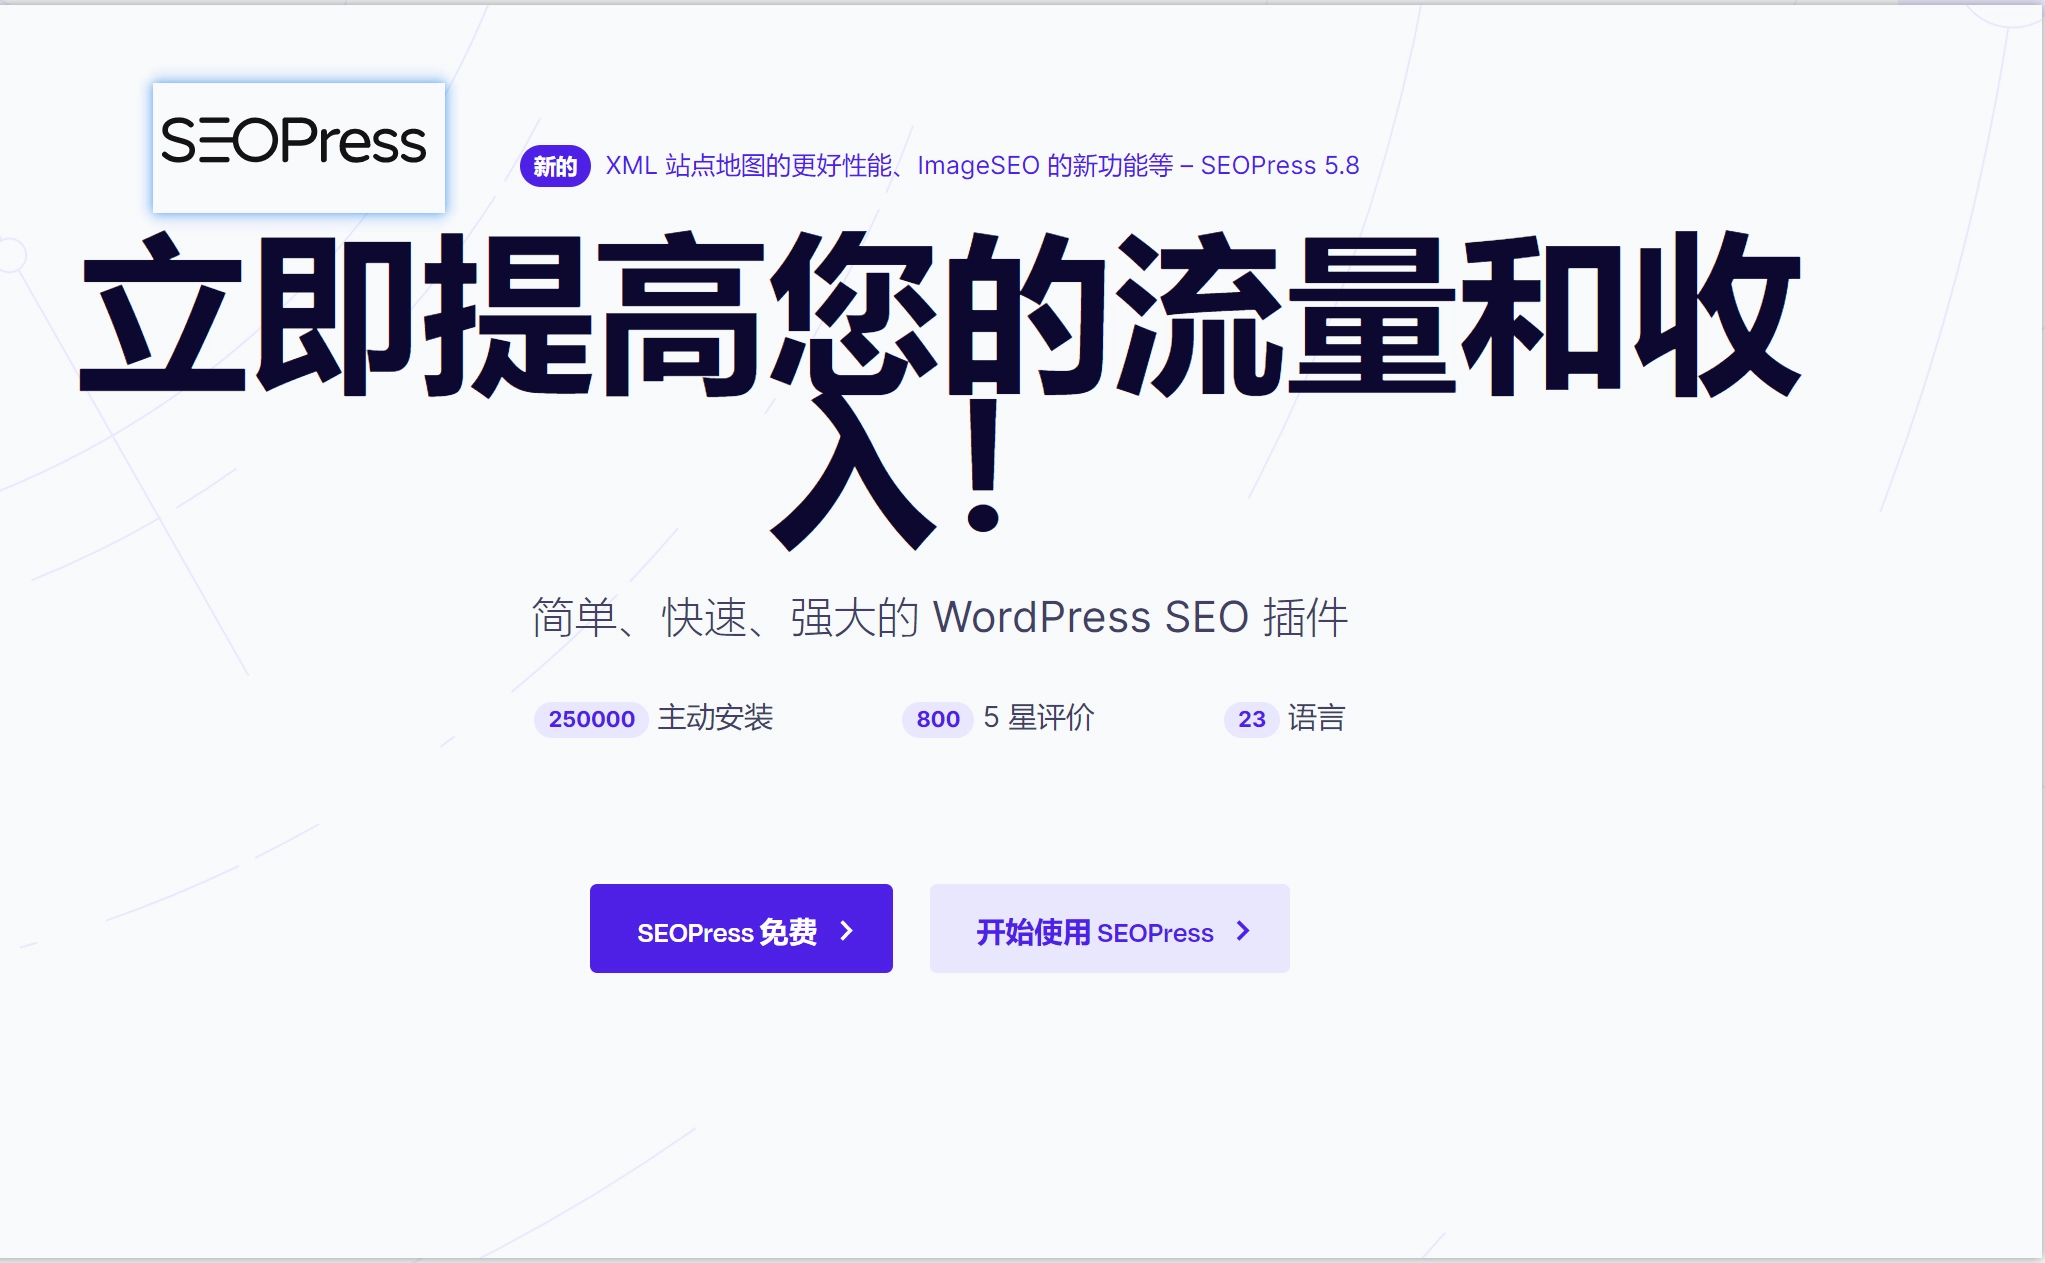 Seopress seo wordpress plugin